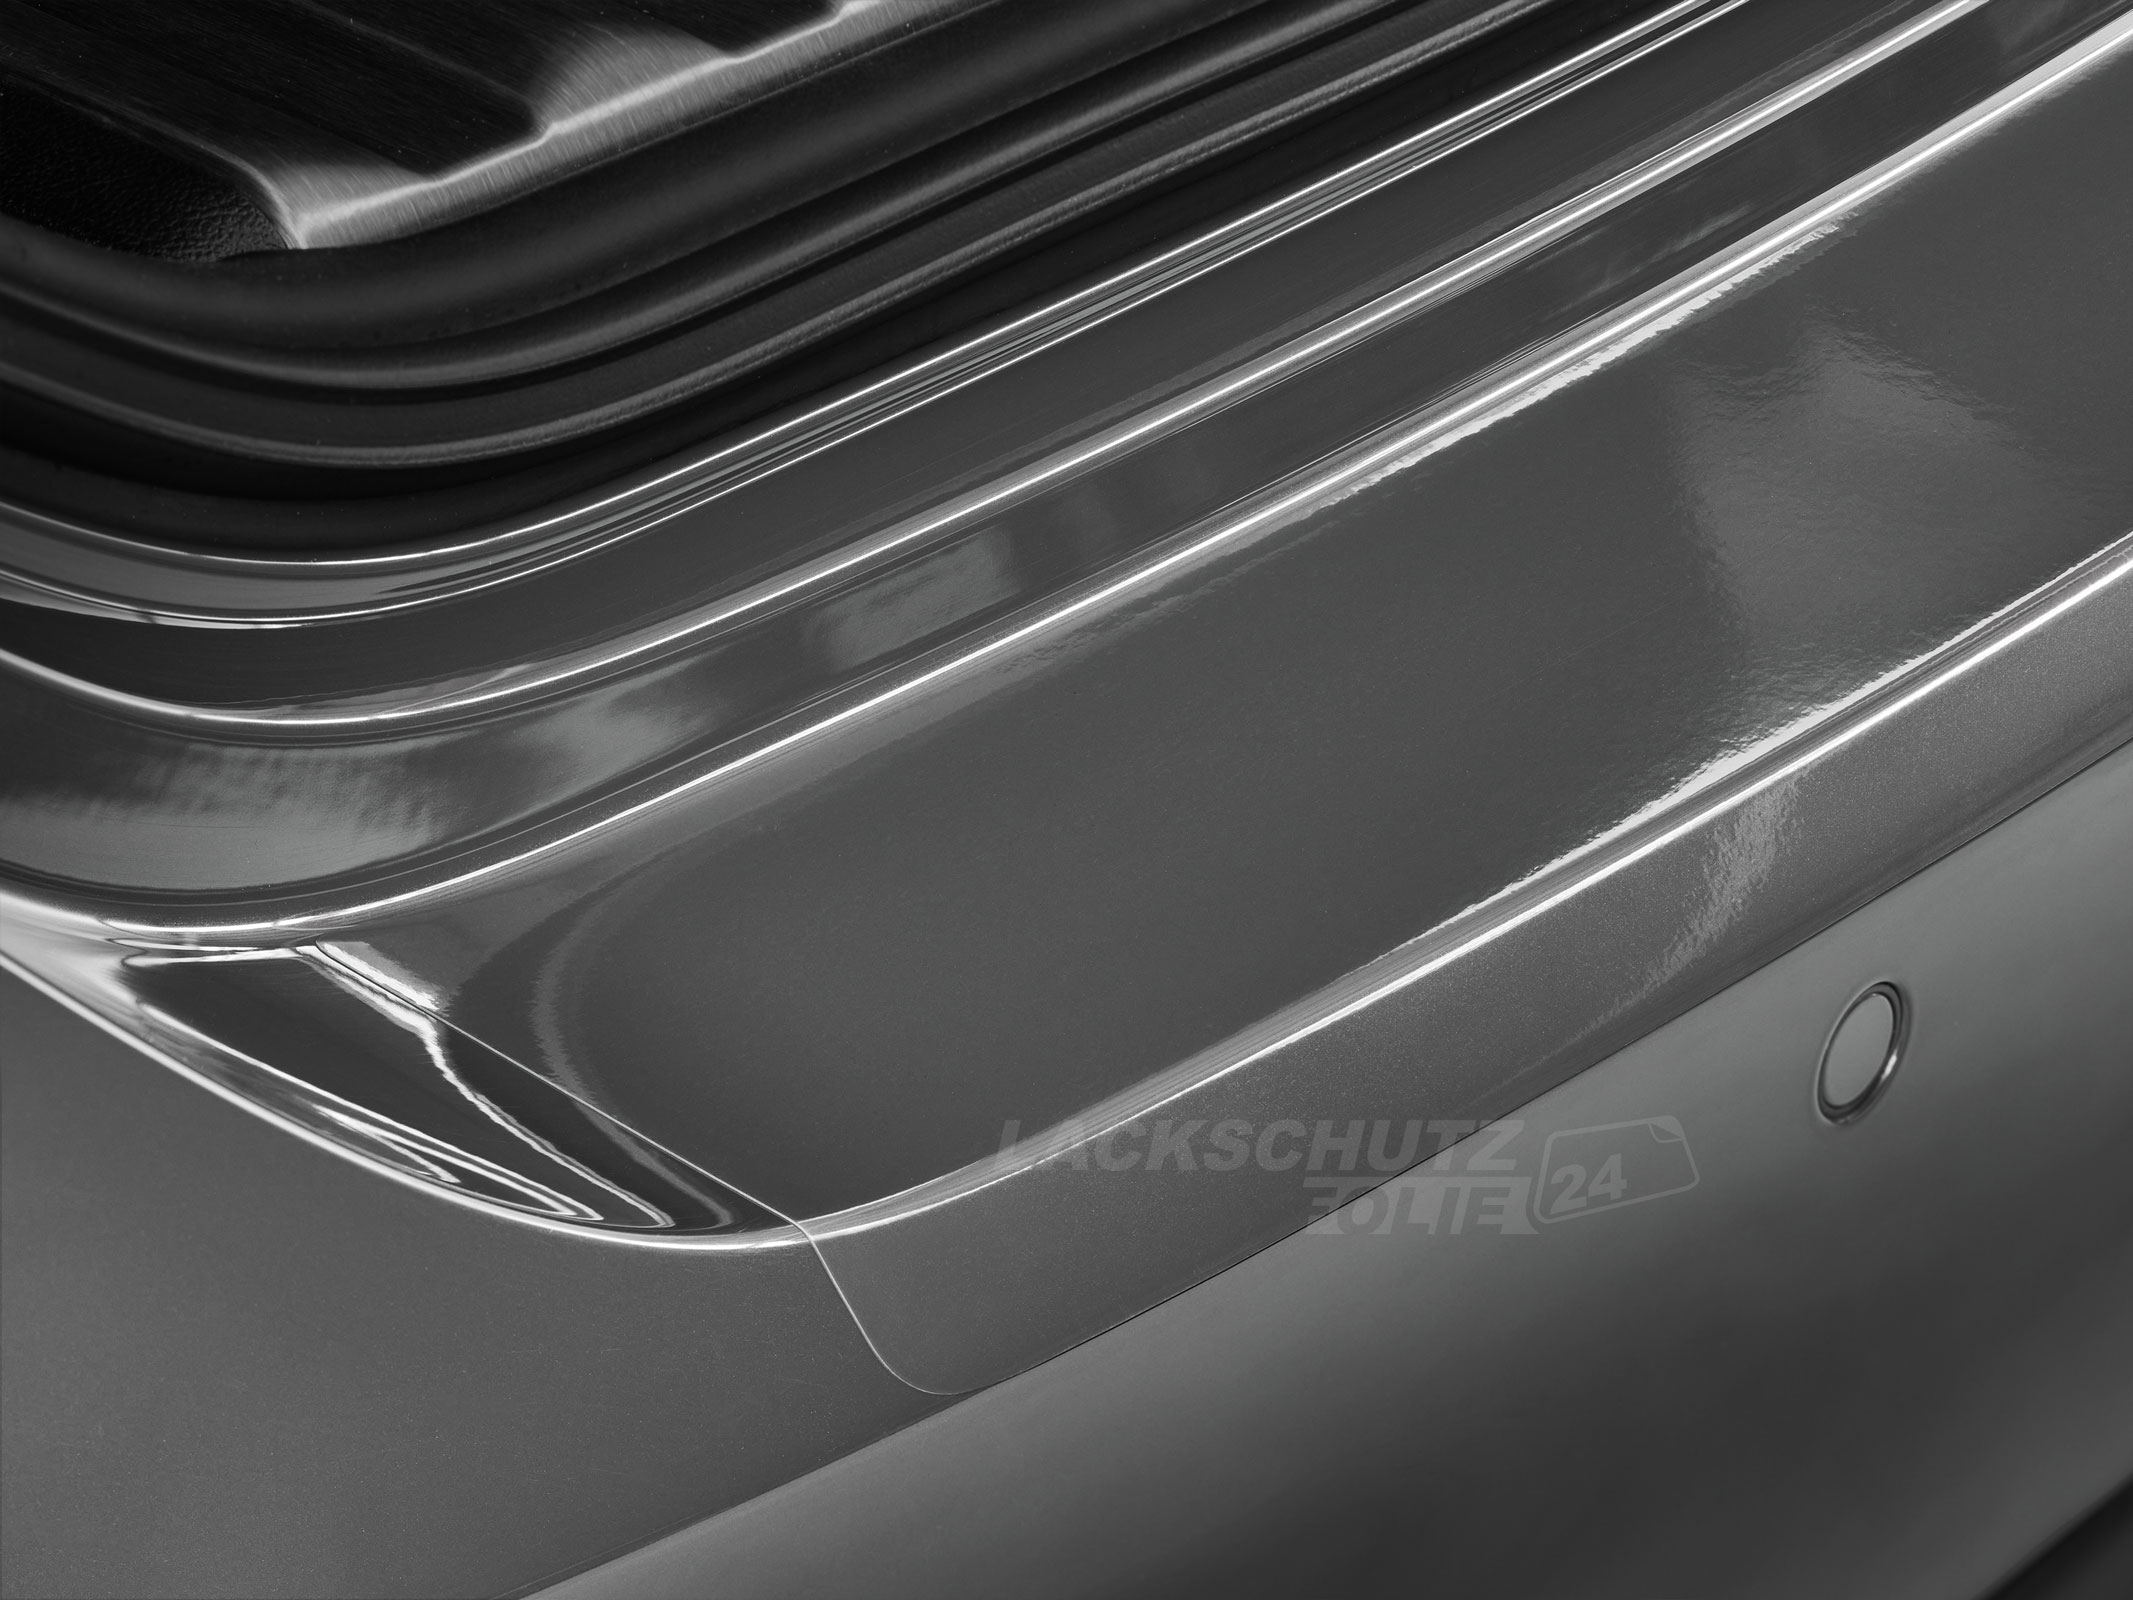 Ladekantenschutzfolie - Transparent Glatt Hochglänzend 240 µm stark für Mercedes-Benz M-Klasse Typ W163, BJ 1997-2005